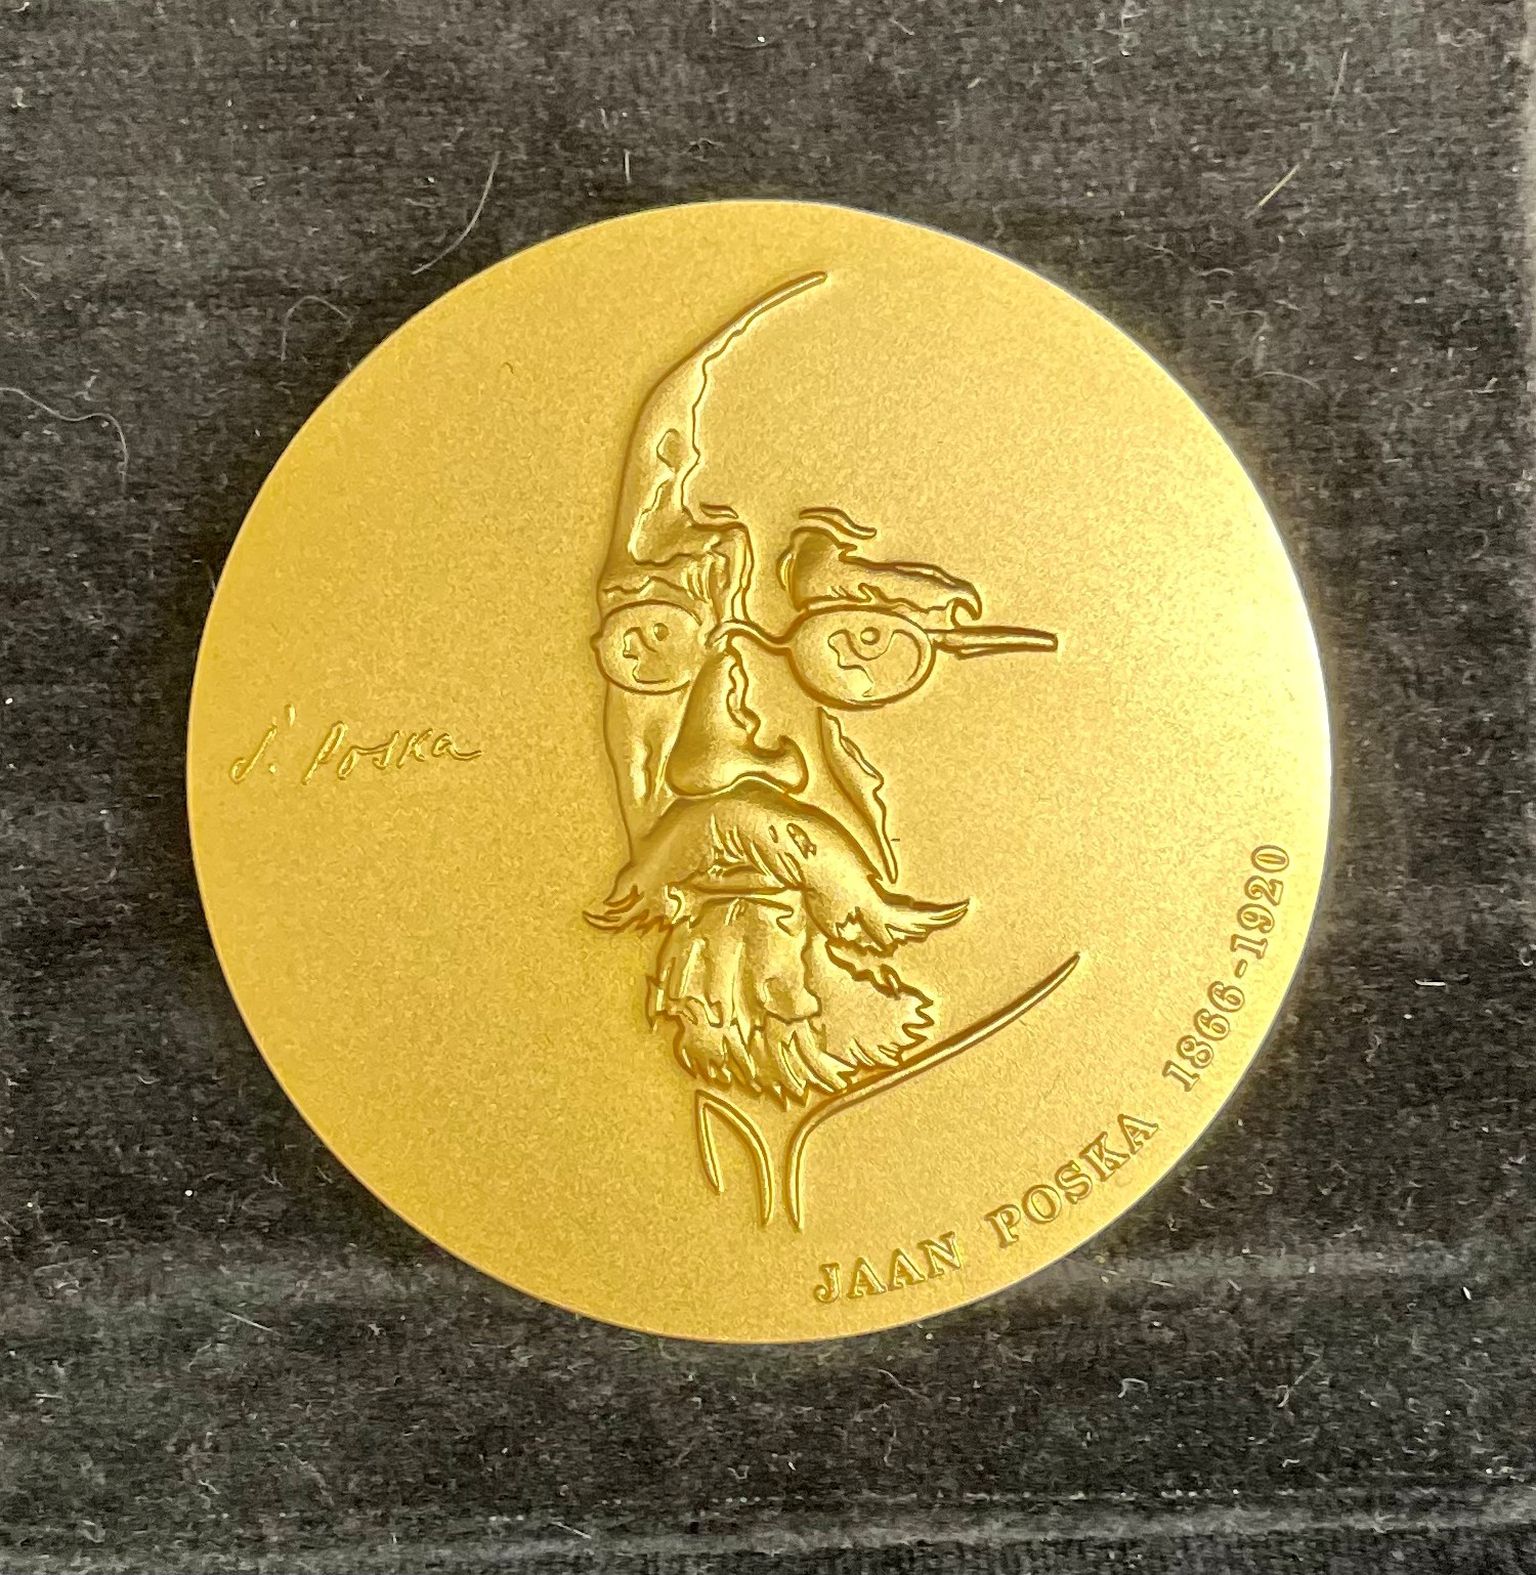 Jaan Poska medal